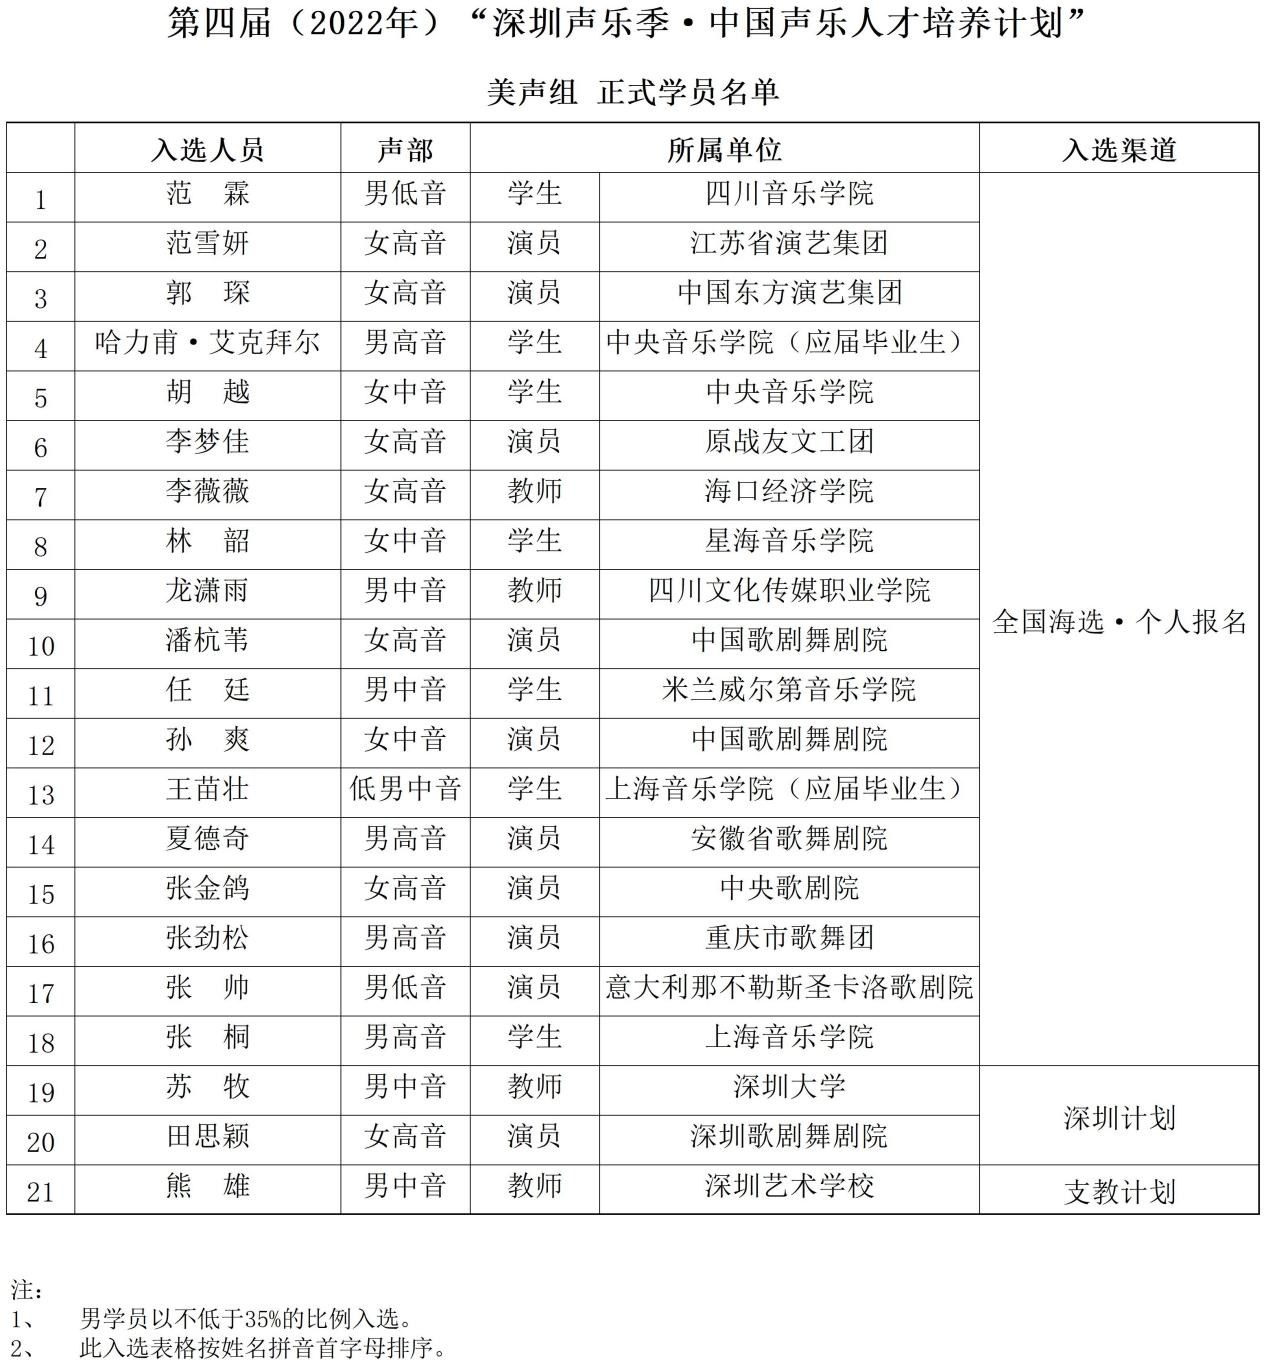 图片52022第四届“深圳声乐季·中国声乐人才培养计划”学员名单.png